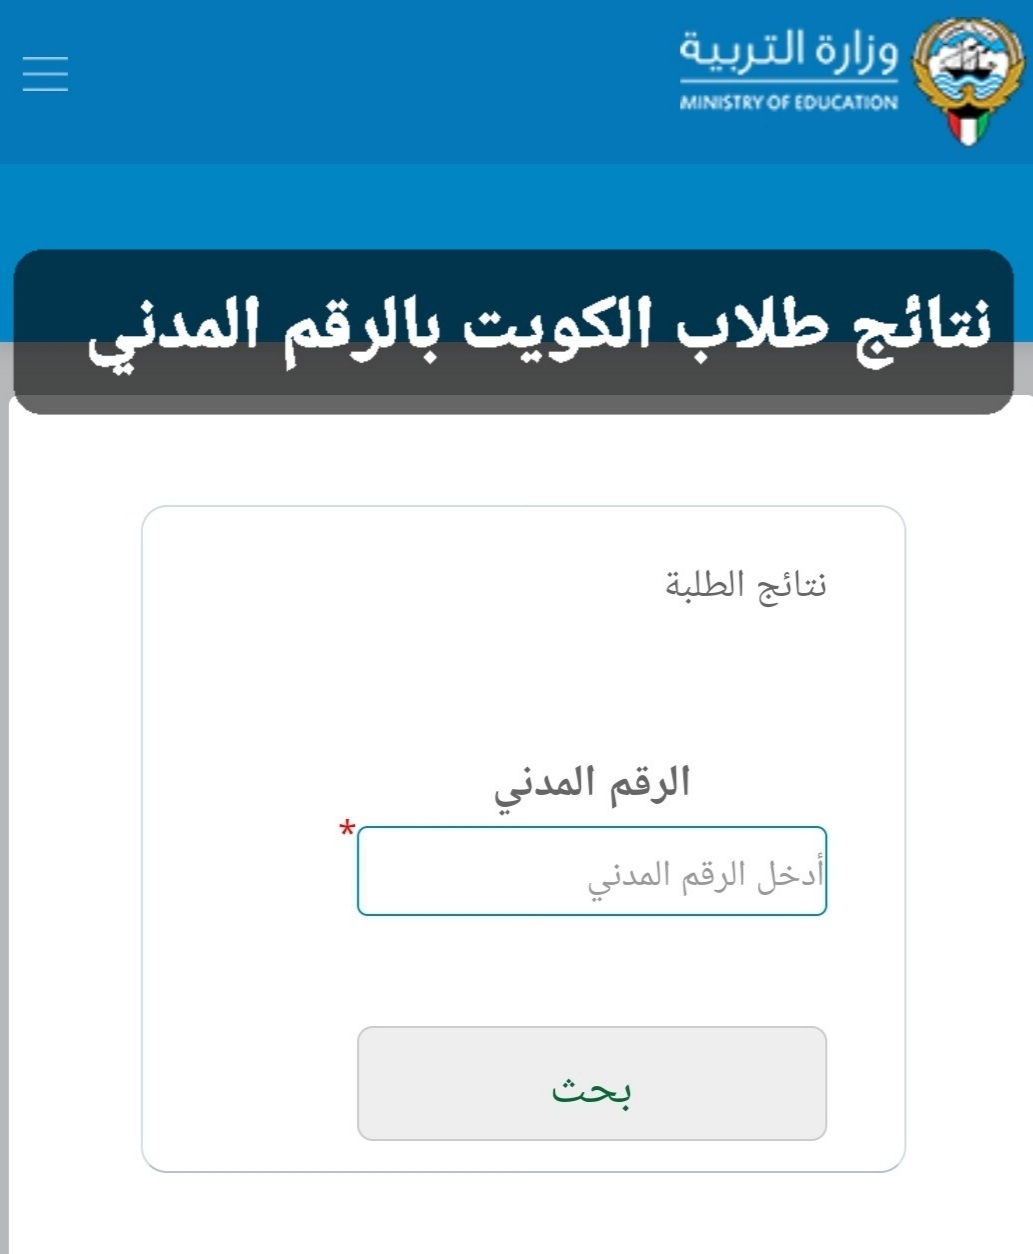 موقع نتائج الطلاب الكويت 2022 المتوسط والثانوي برقم الطالب المدني